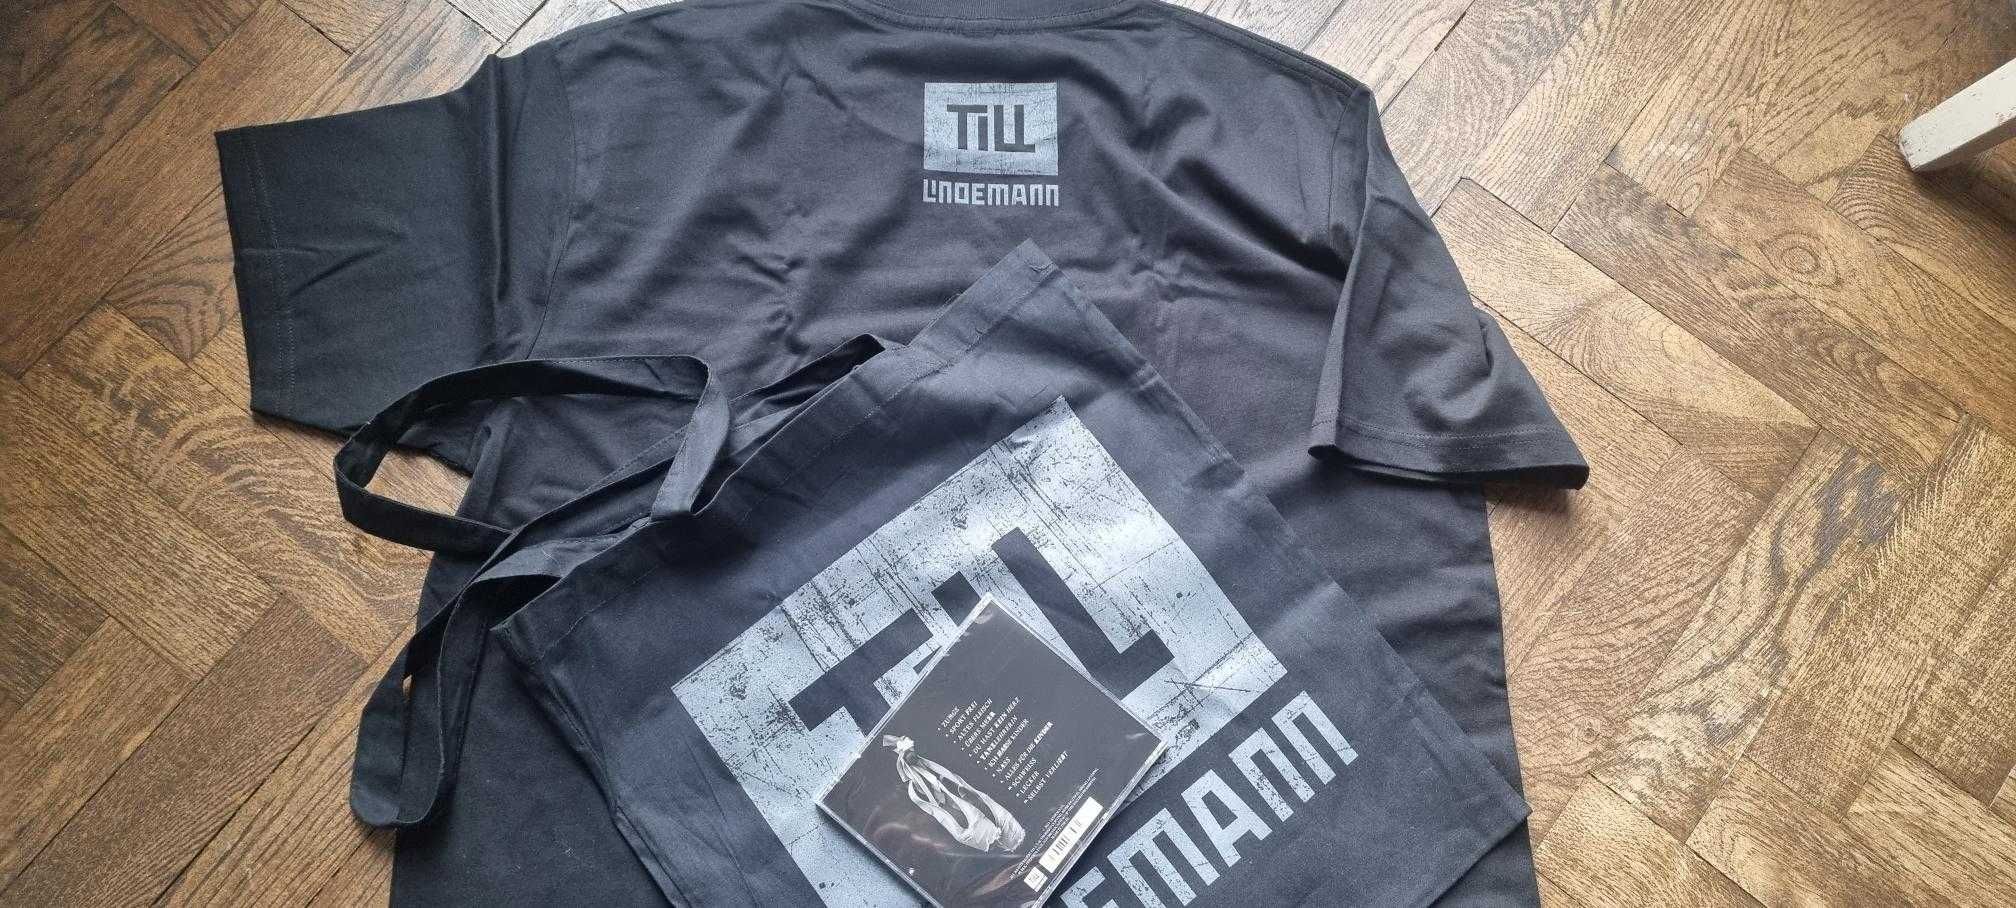 Till Lindemann Zunge CD + T shirt XL + Torba